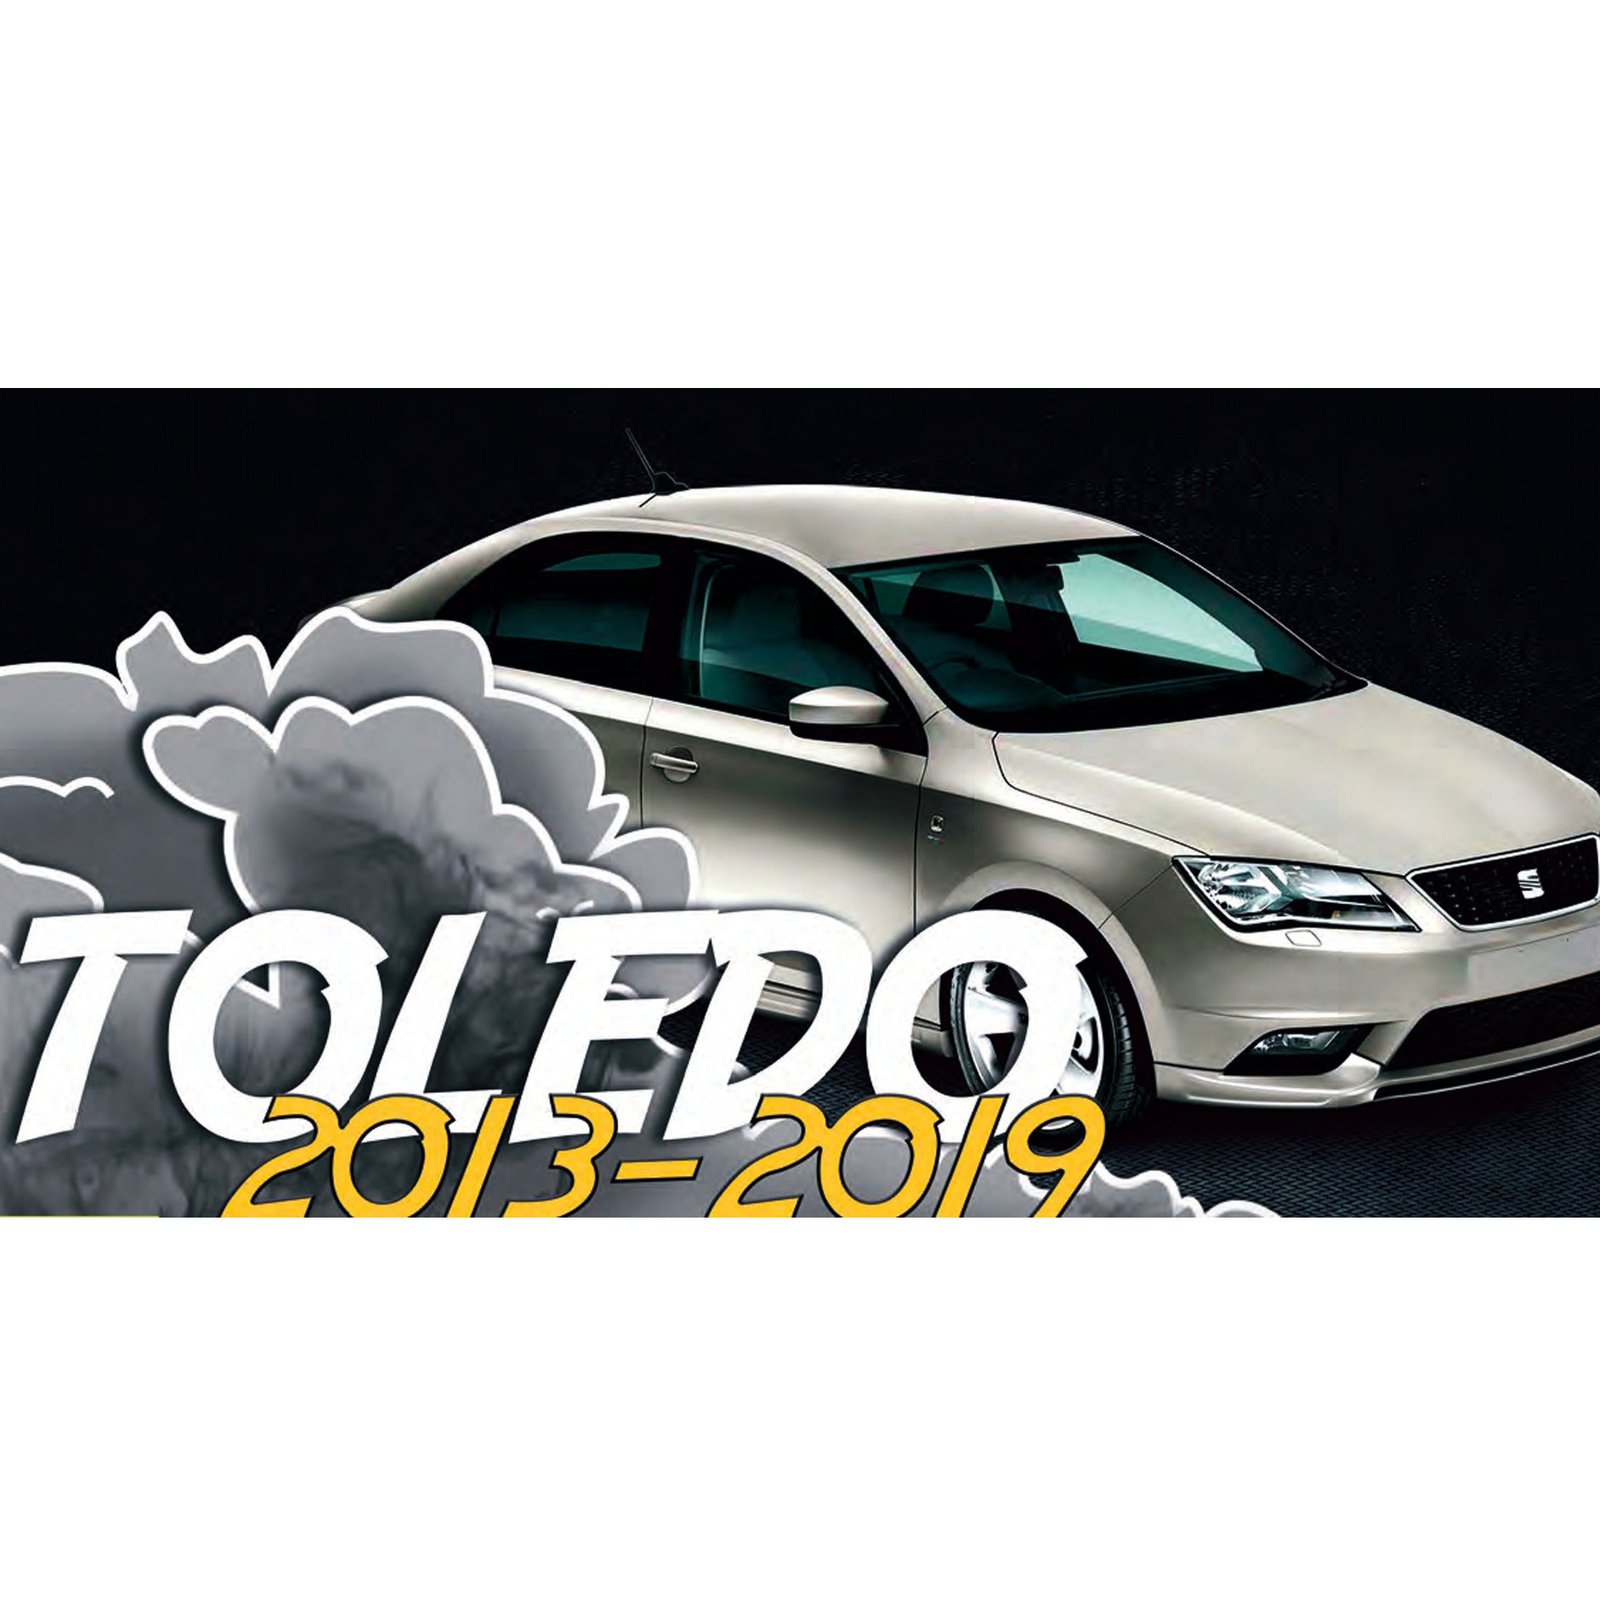 Juego de Faldones para Seat Toledo (2013-2019)